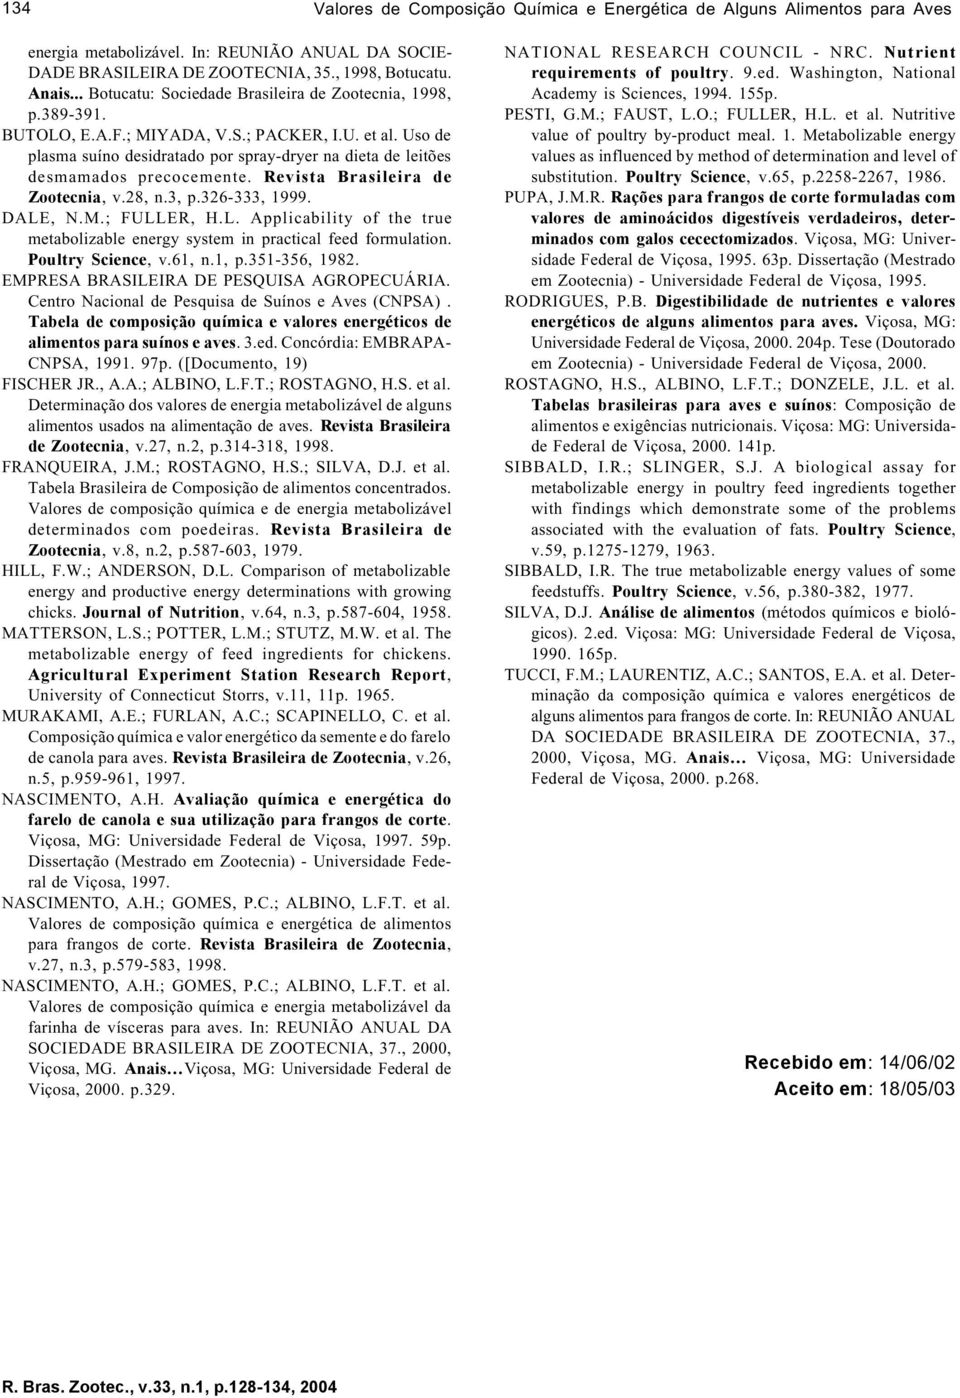 Uso de plasma suíno desidratado por spray-dryer na dieta de leitões desmamados precocemente. Revista Brasileira de Zootecnia, v.28, n.3, p.326-333, 1999. DALE